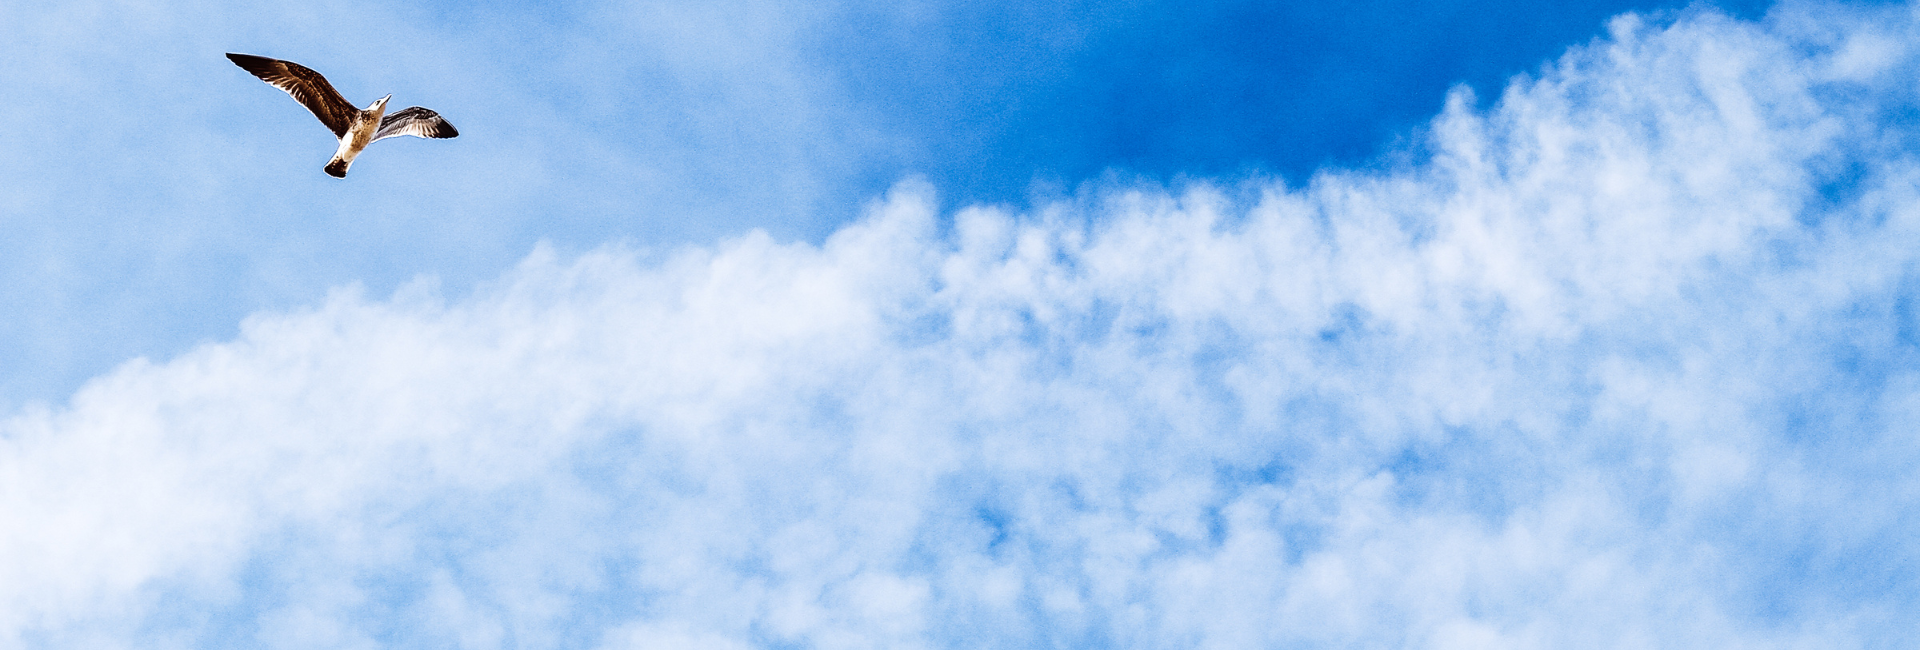 vogel die vliegt in blauwe lucht met wolken